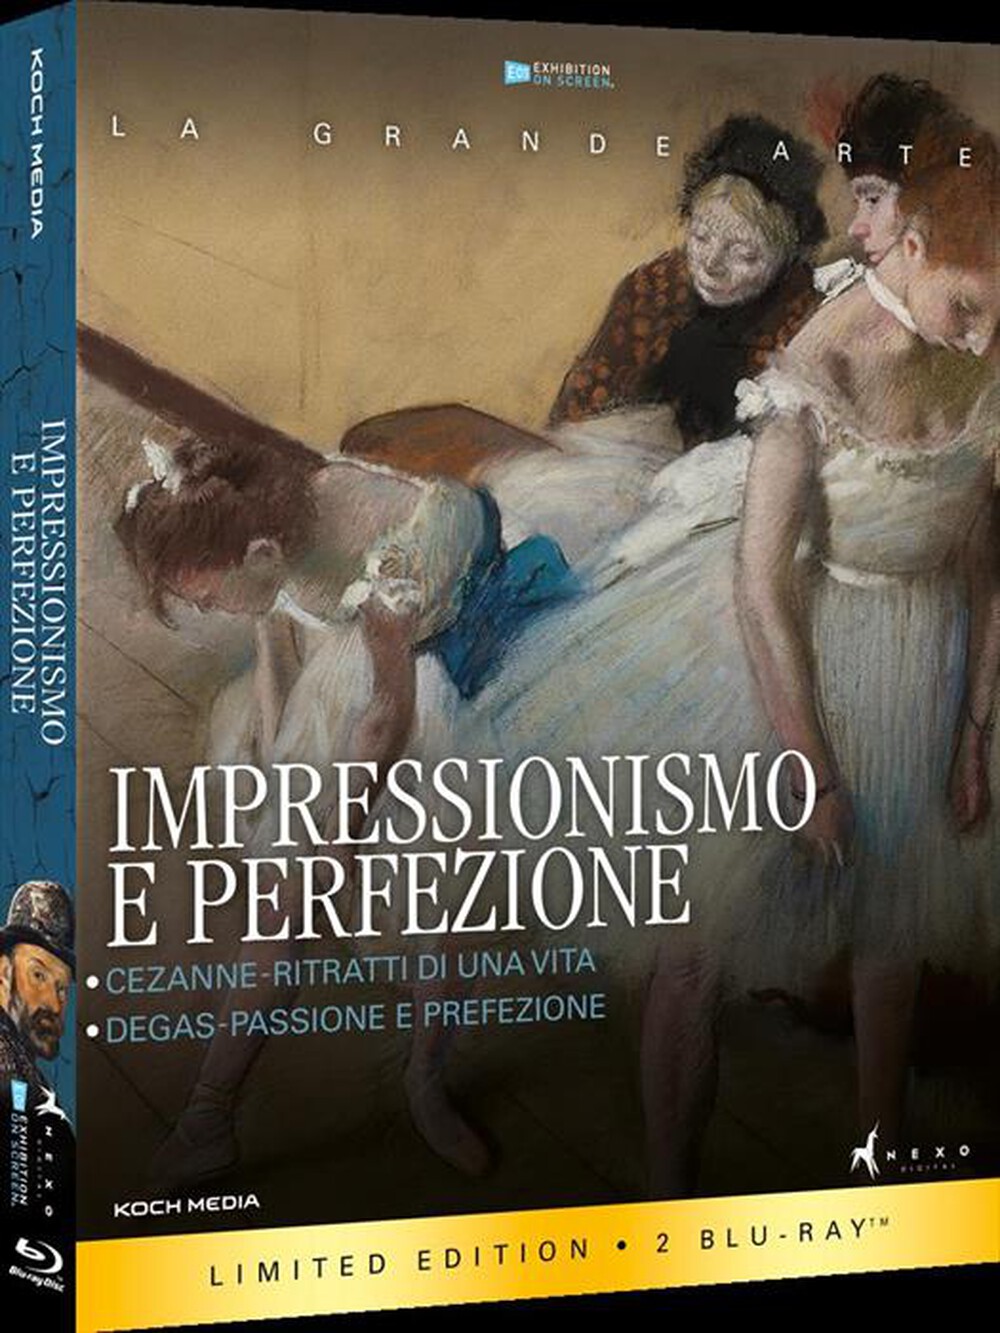 "Nexo Digital - Impressionismo E Perfezione (2 Blu-Ray)"